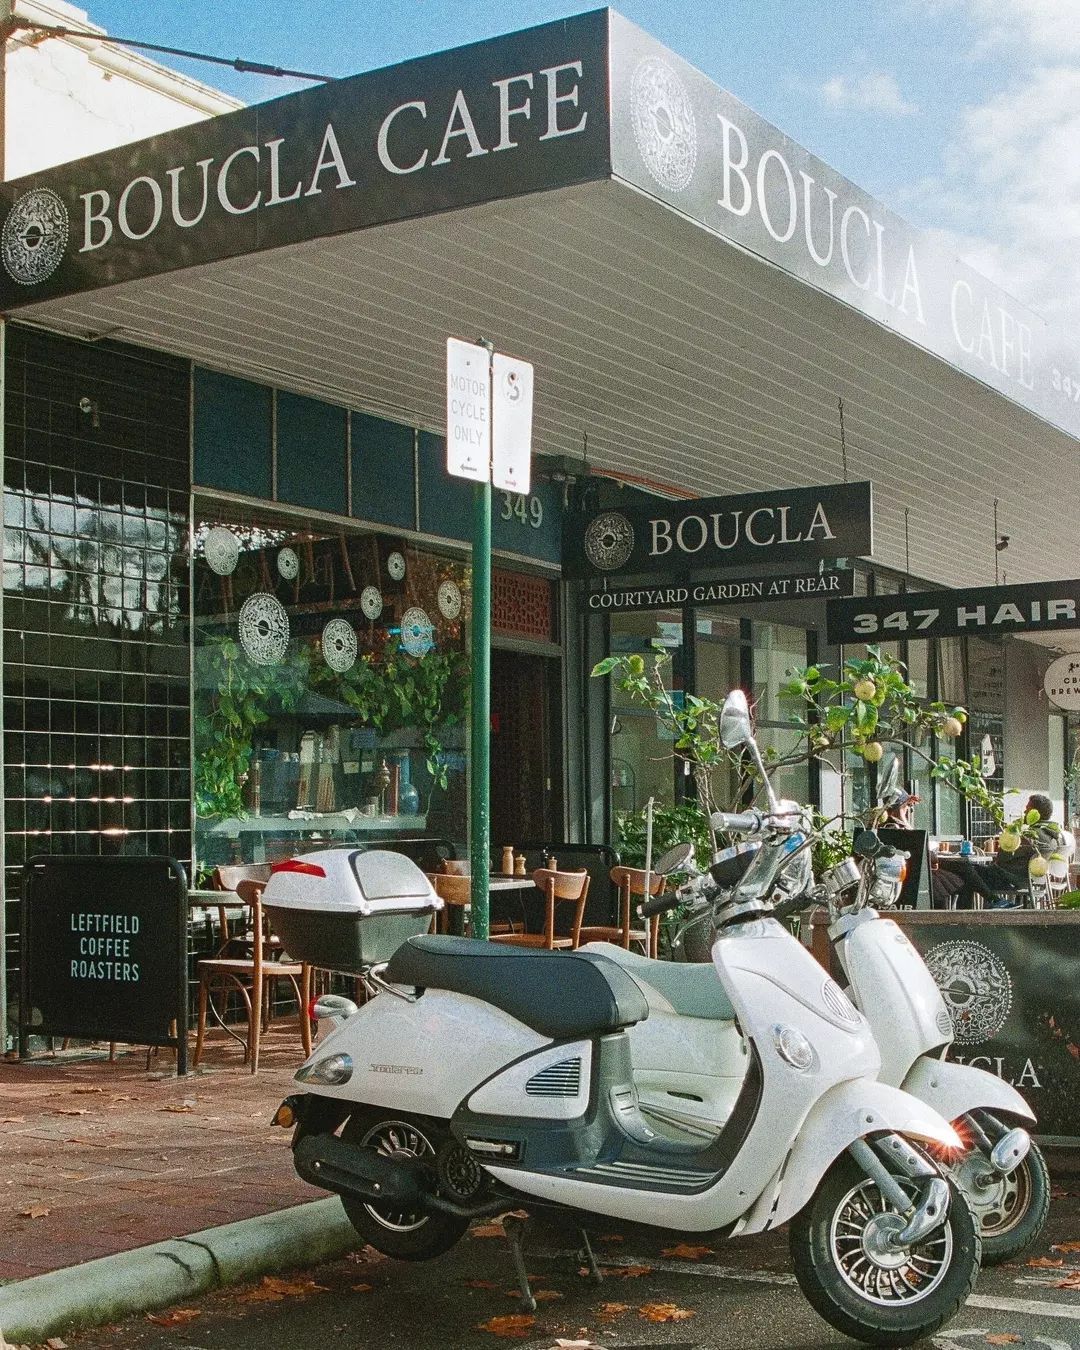 Outside Boucla, a Greek cafe in Perth